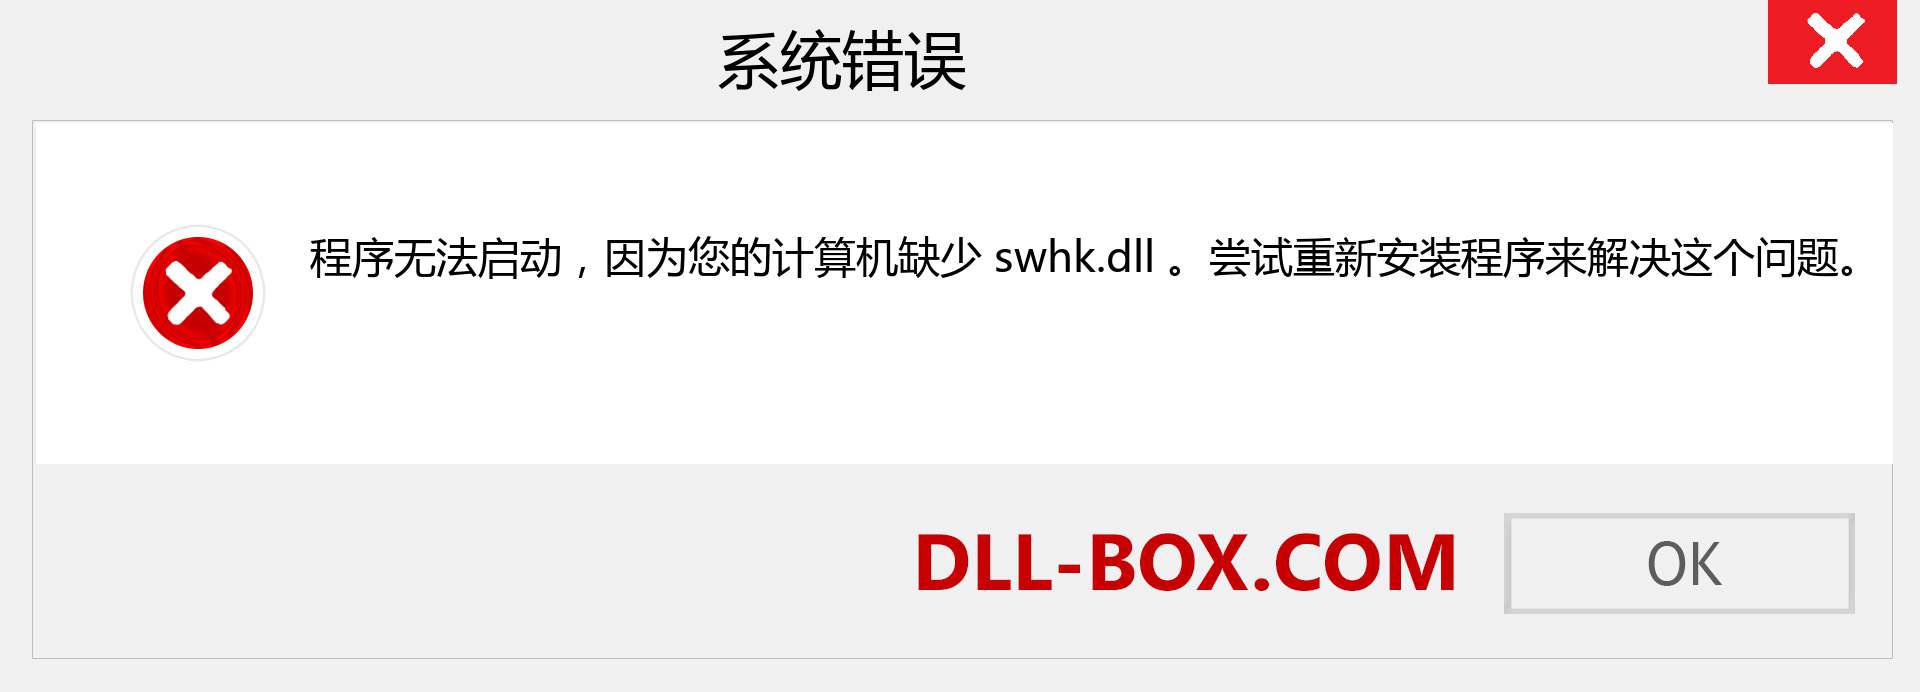 swhk.dll 文件丢失？。 适用于 Windows 7、8、10 的下载 - 修复 Windows、照片、图像上的 swhk dll 丢失错误